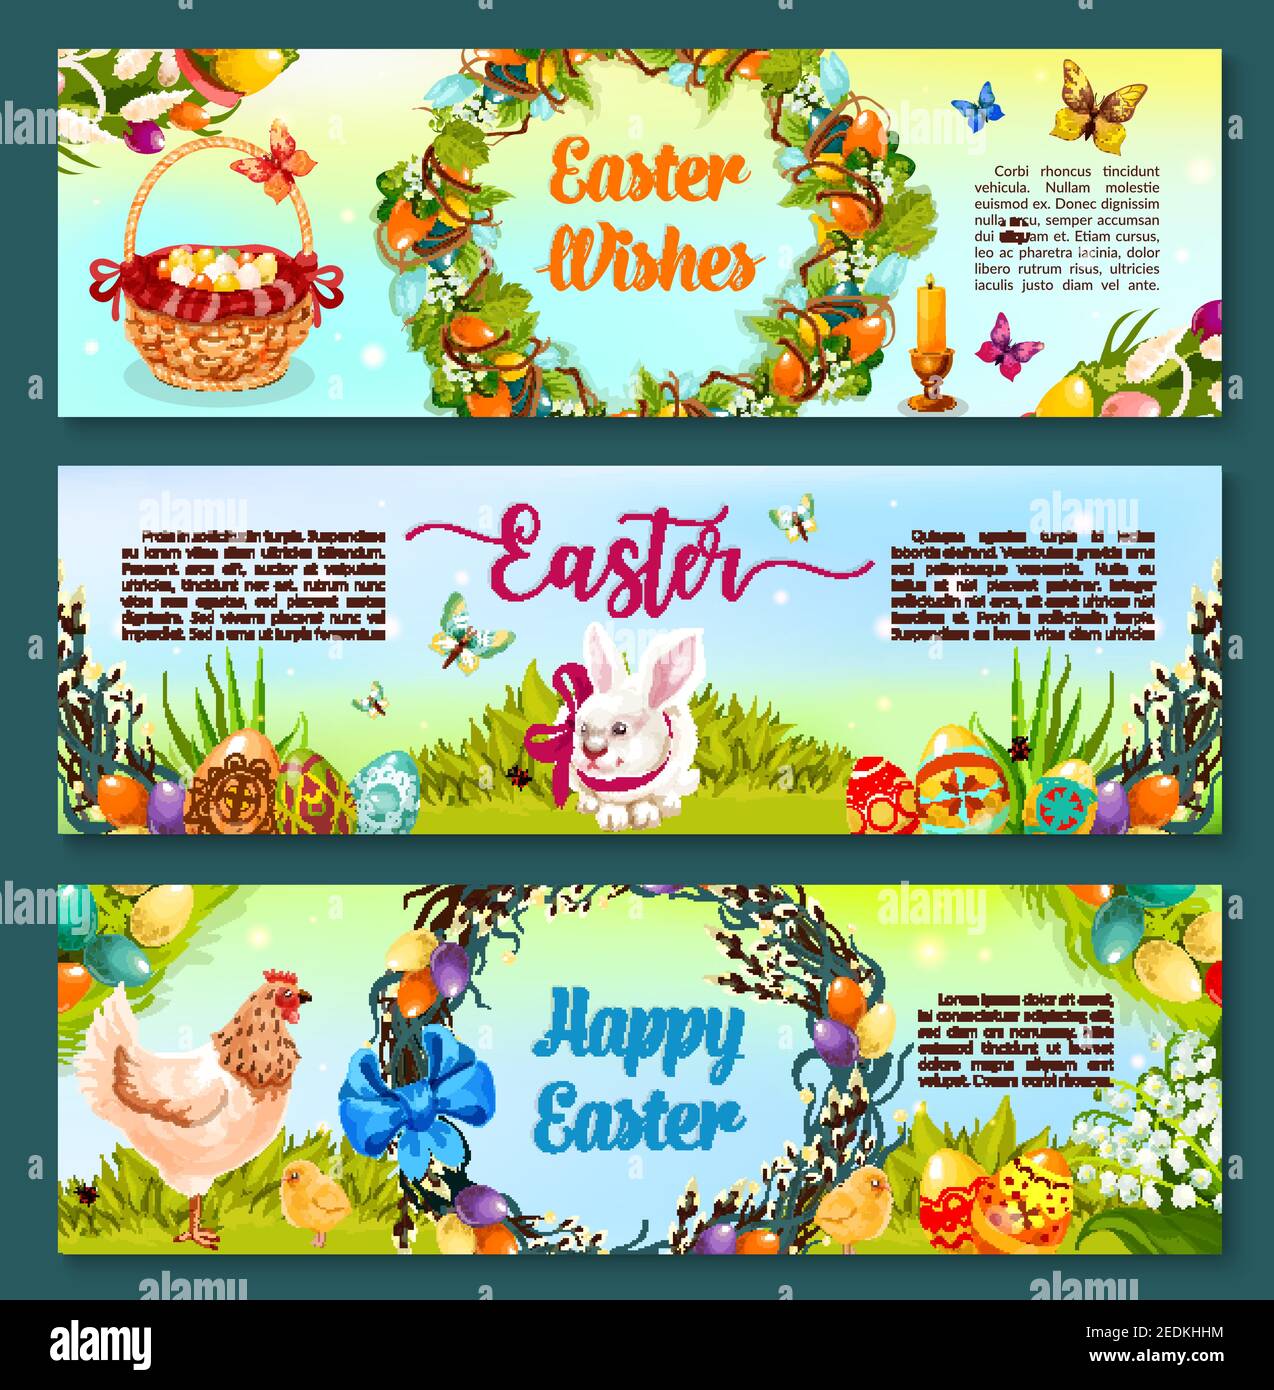 Banner de caricatura de caza de huevo de Pascua. Huevo de Pascua pintado con conejito de conejo y pollo sobre hierba verde, flores de primavera y guirnalda de rama de sauce, adornado Ilustración del Vector